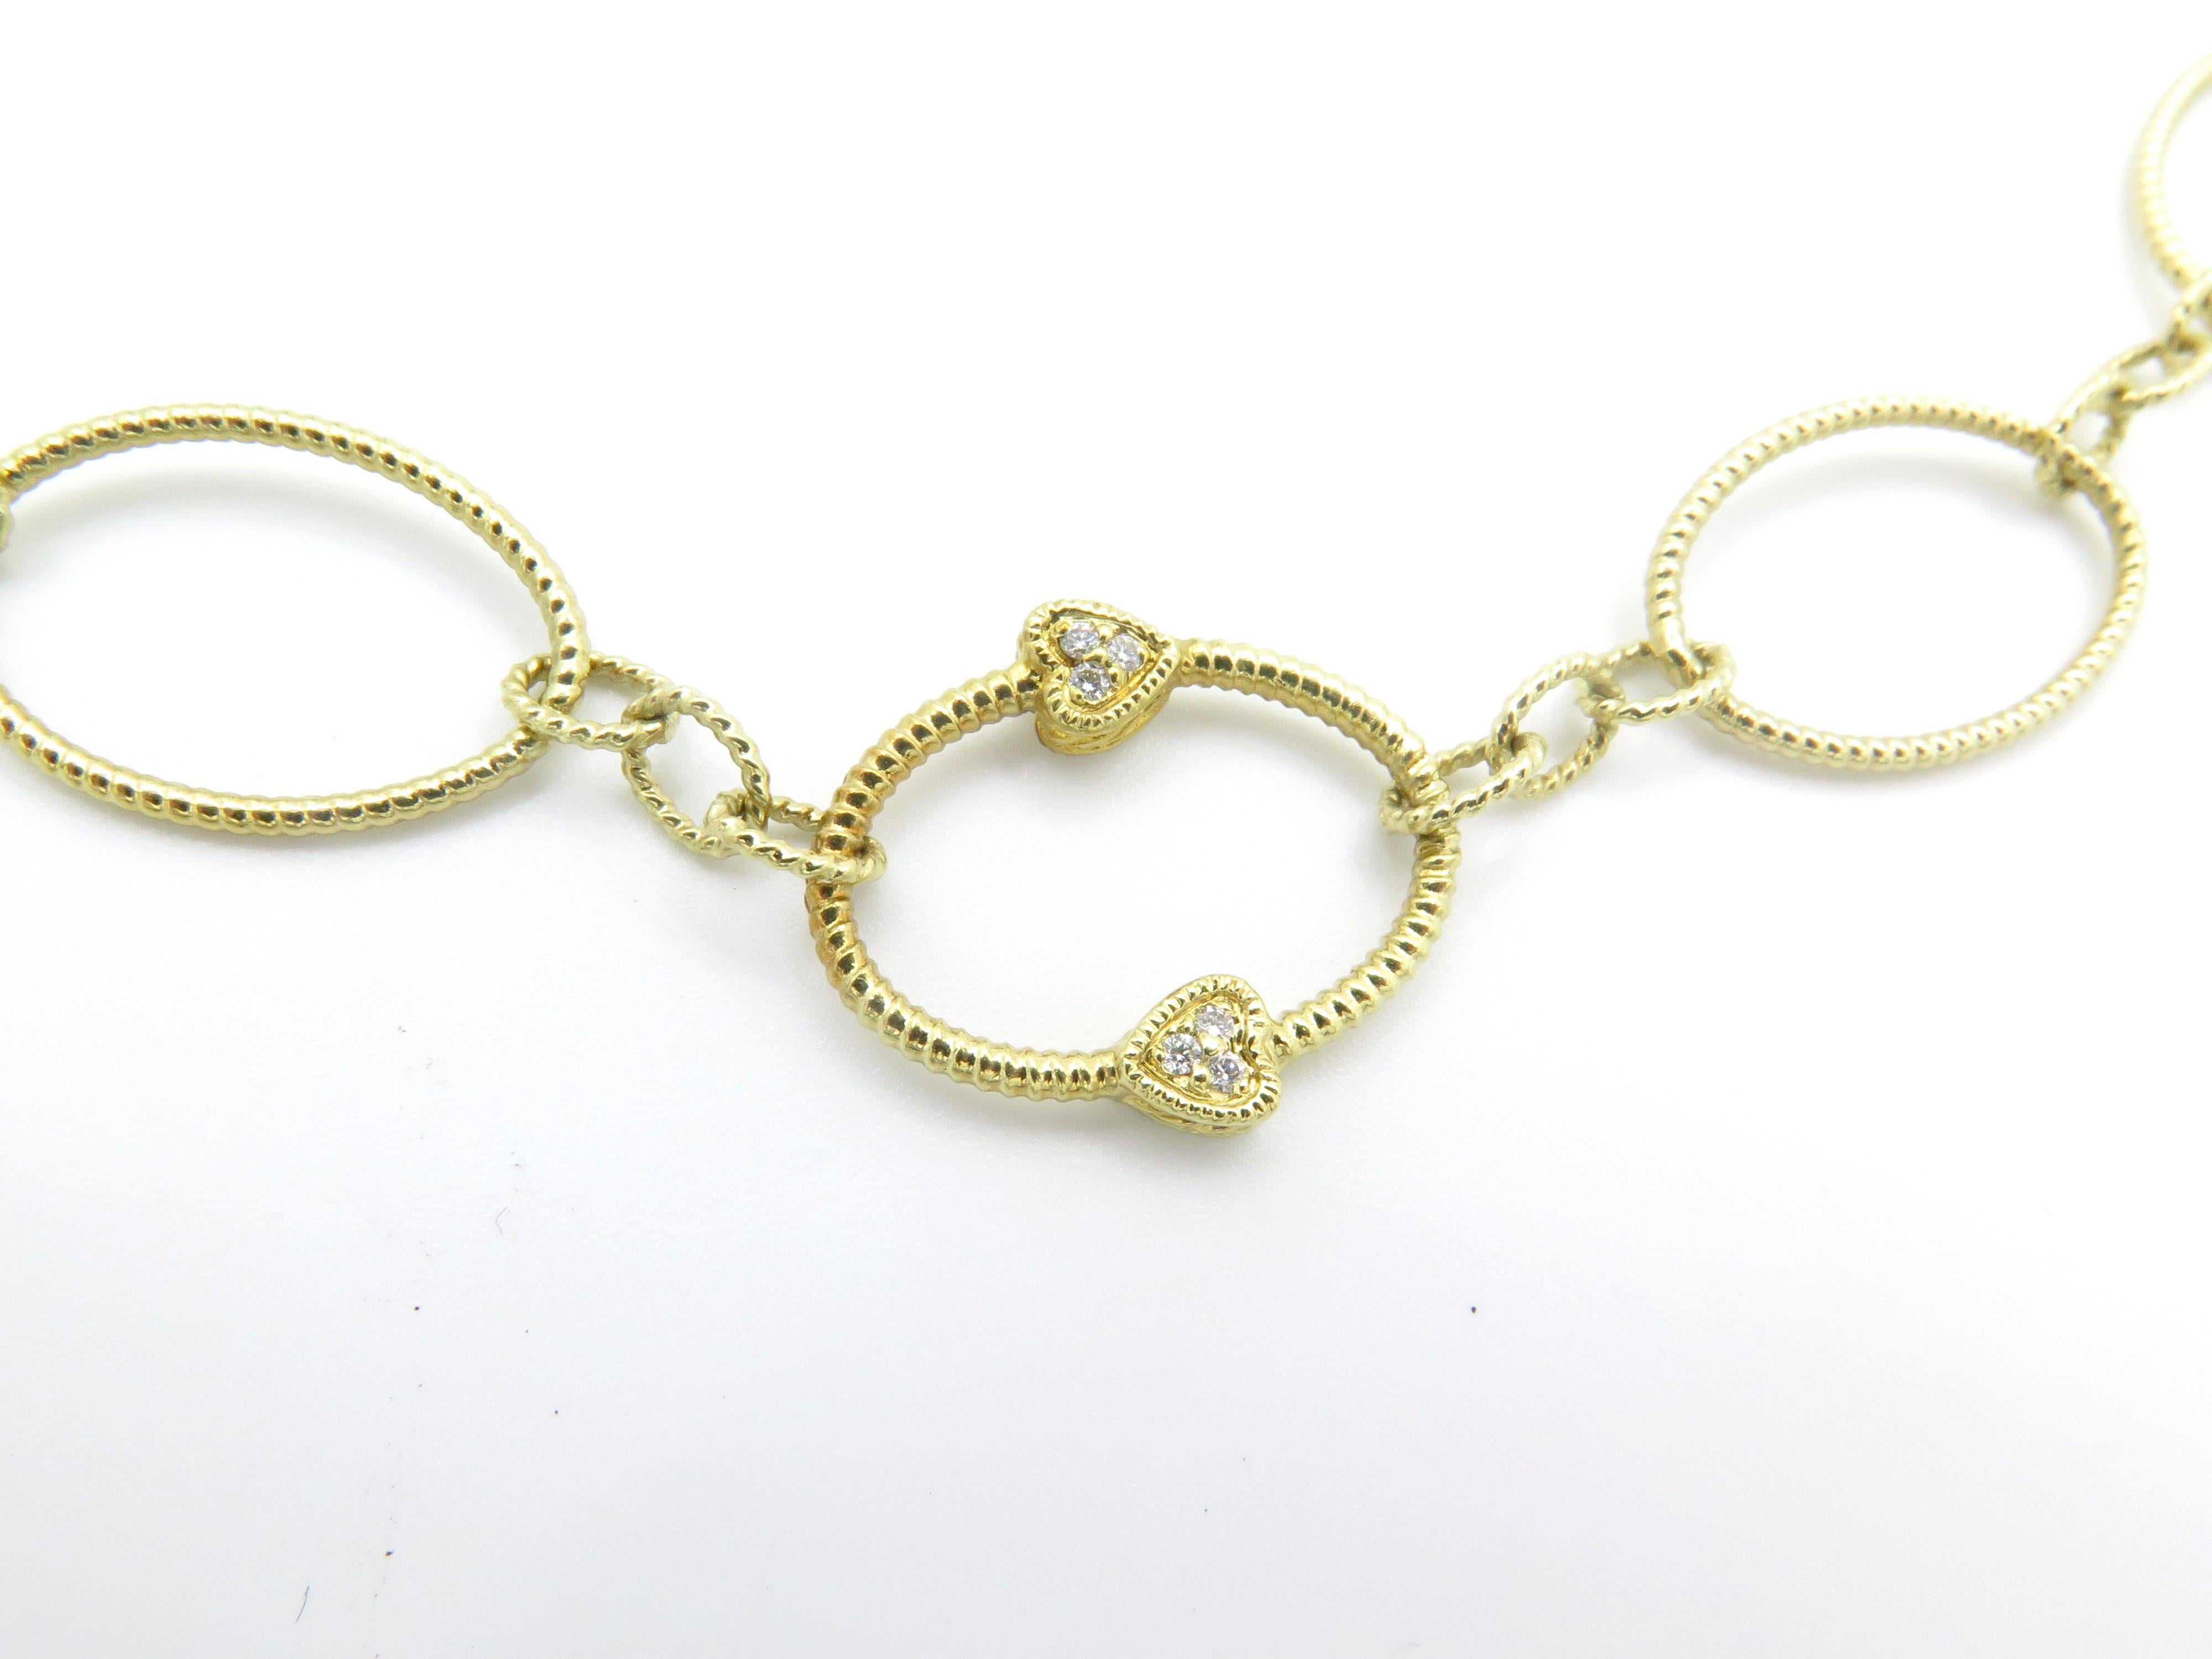 Romantic Judith Ripka 18 Karat Yellow Gold Circular Link Necklace